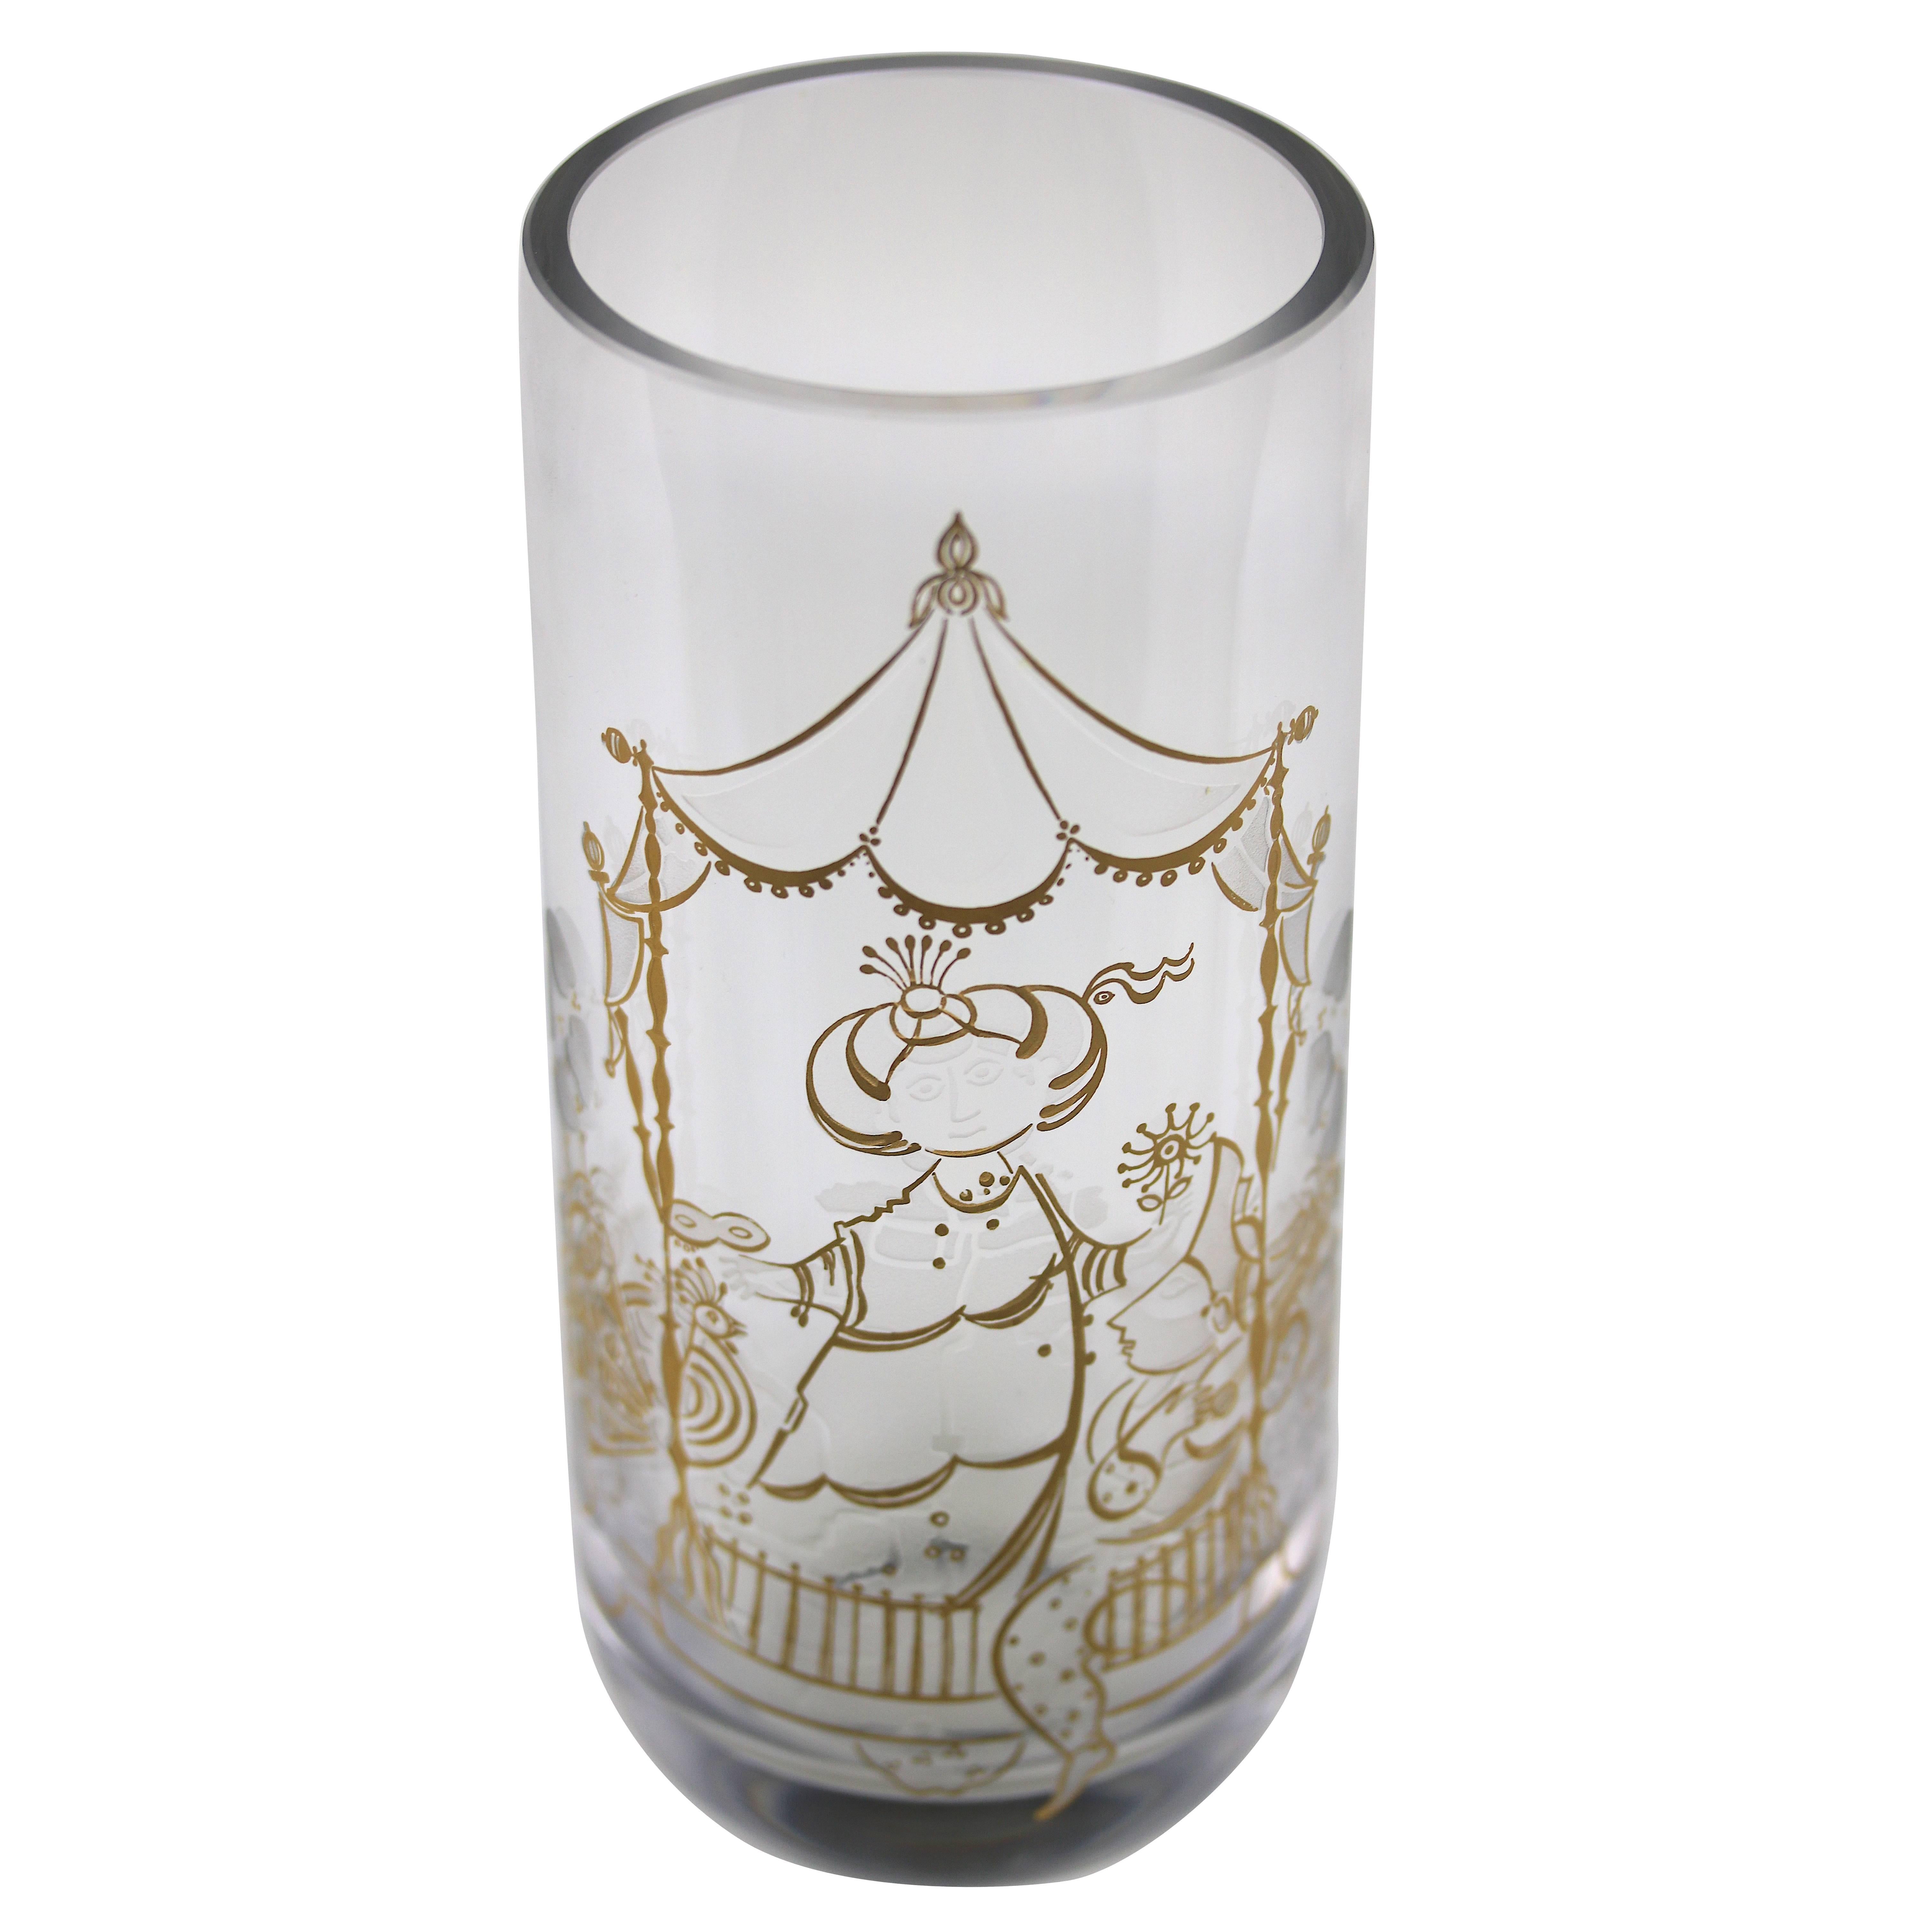 Bjorn Wiinblad Crystal Vase 22K etched Gold Charming Design- signed For Sale